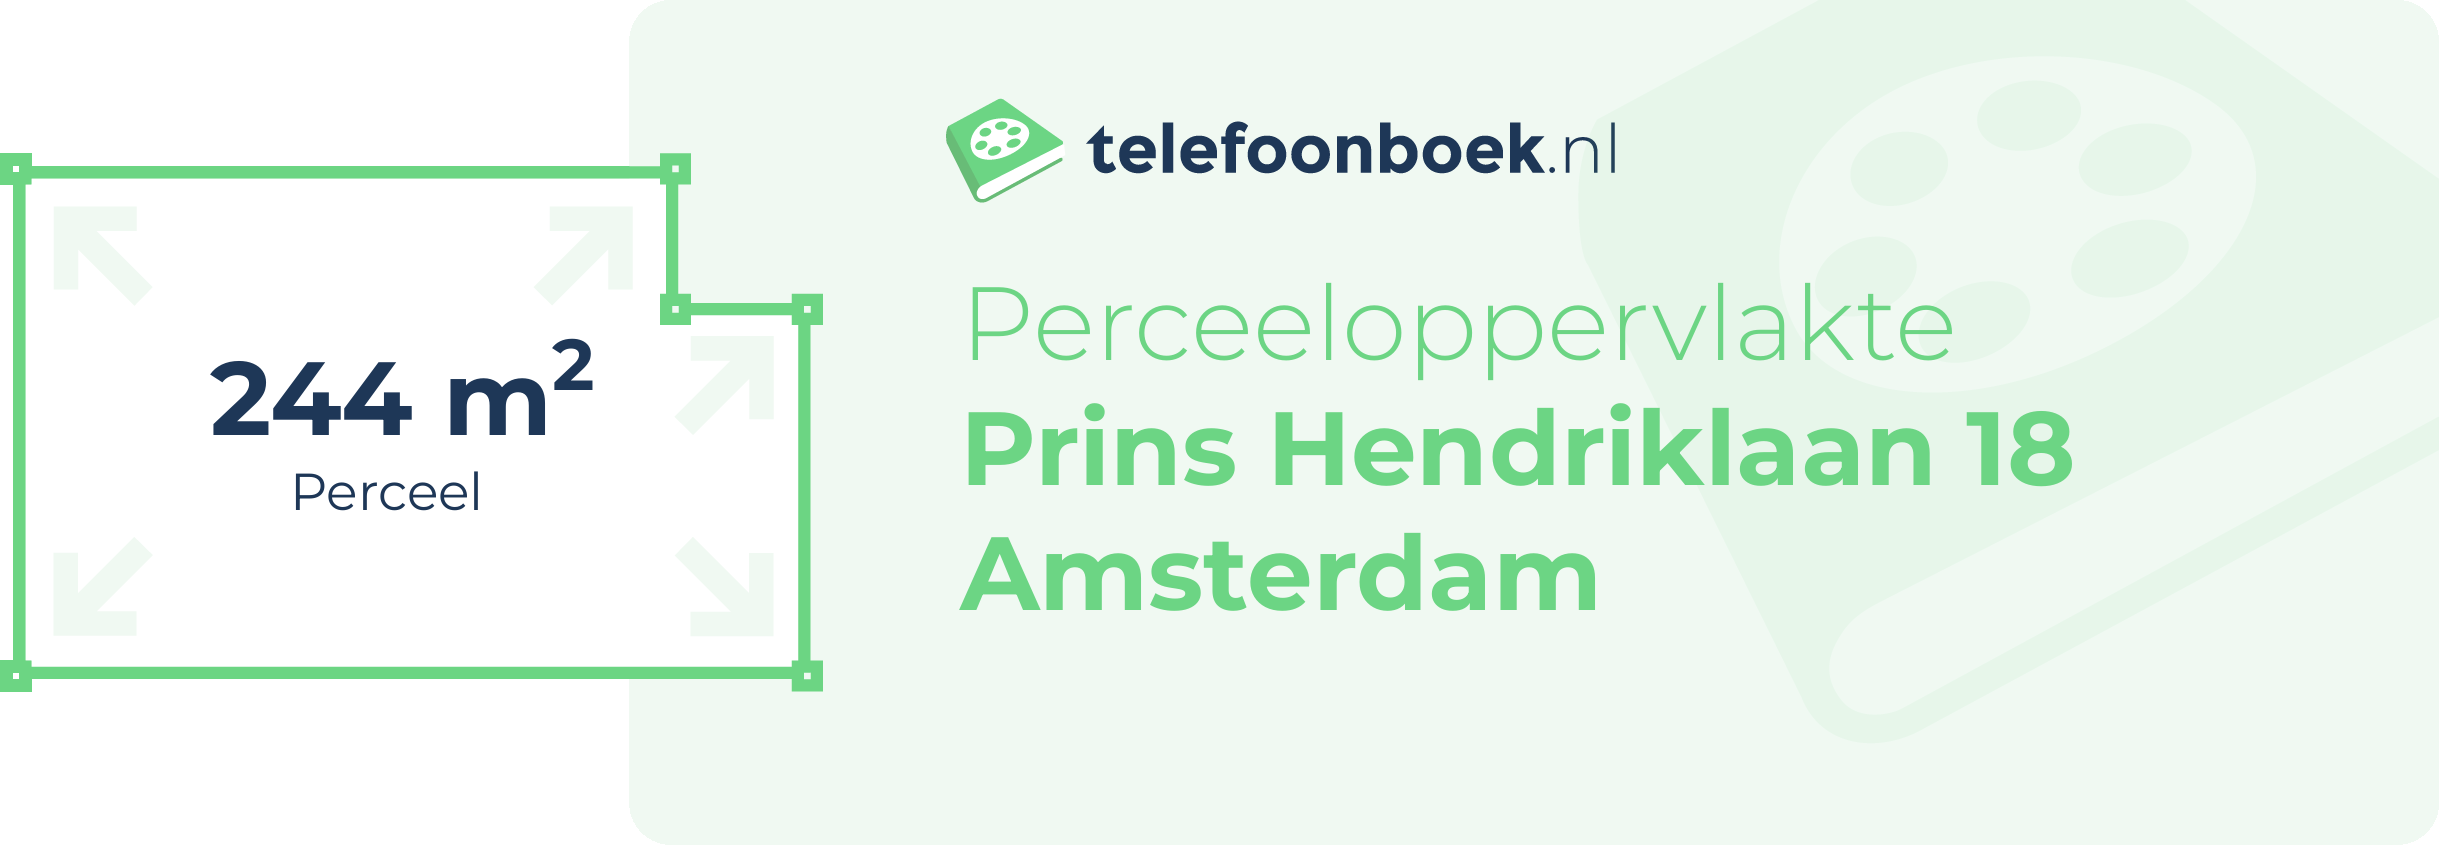 Perceeloppervlakte Prins Hendriklaan 18 Amsterdam